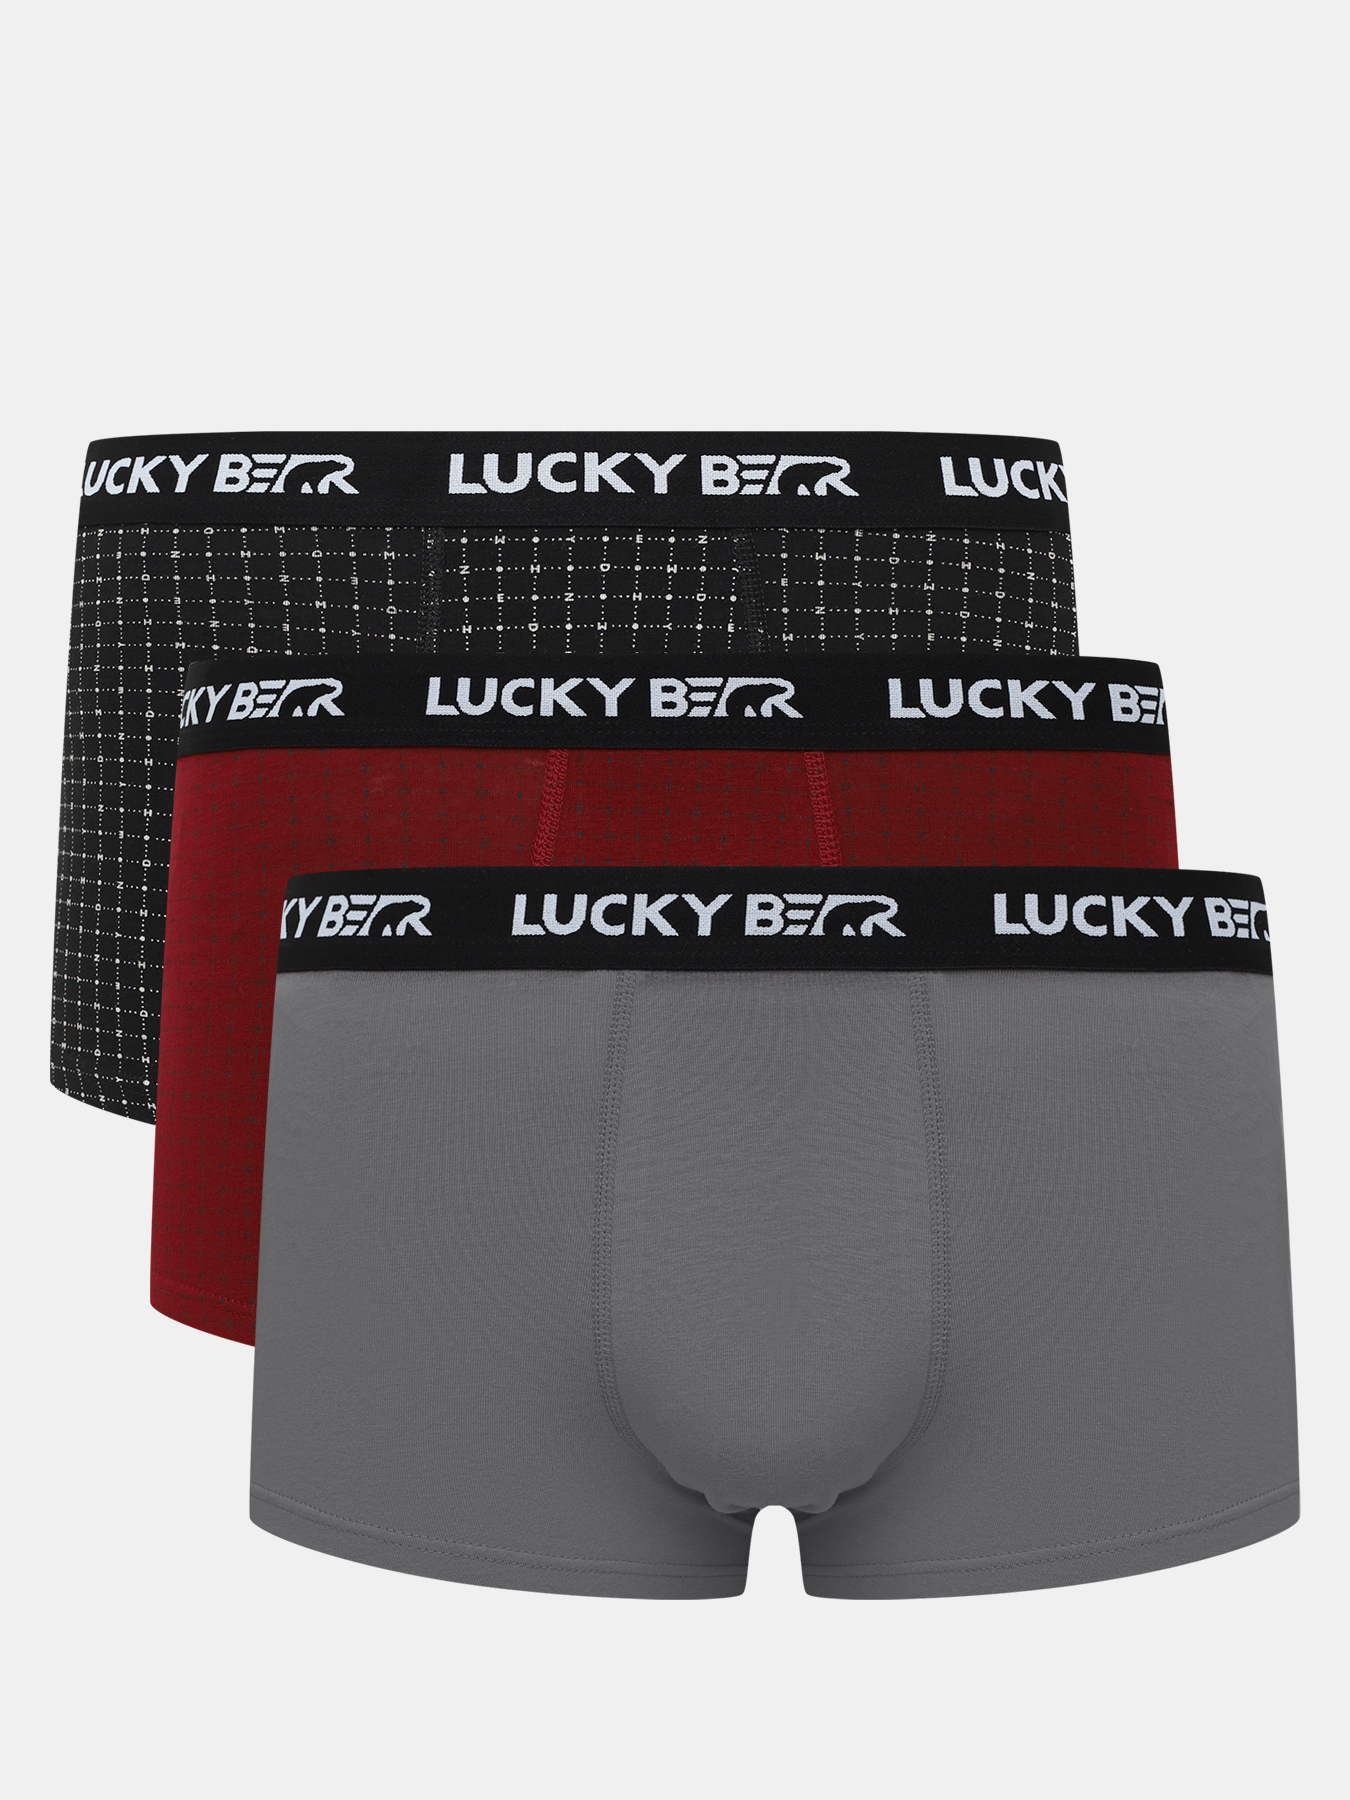 Комплект трусов мужских Lucky Bear 450599 разноцветных XXL